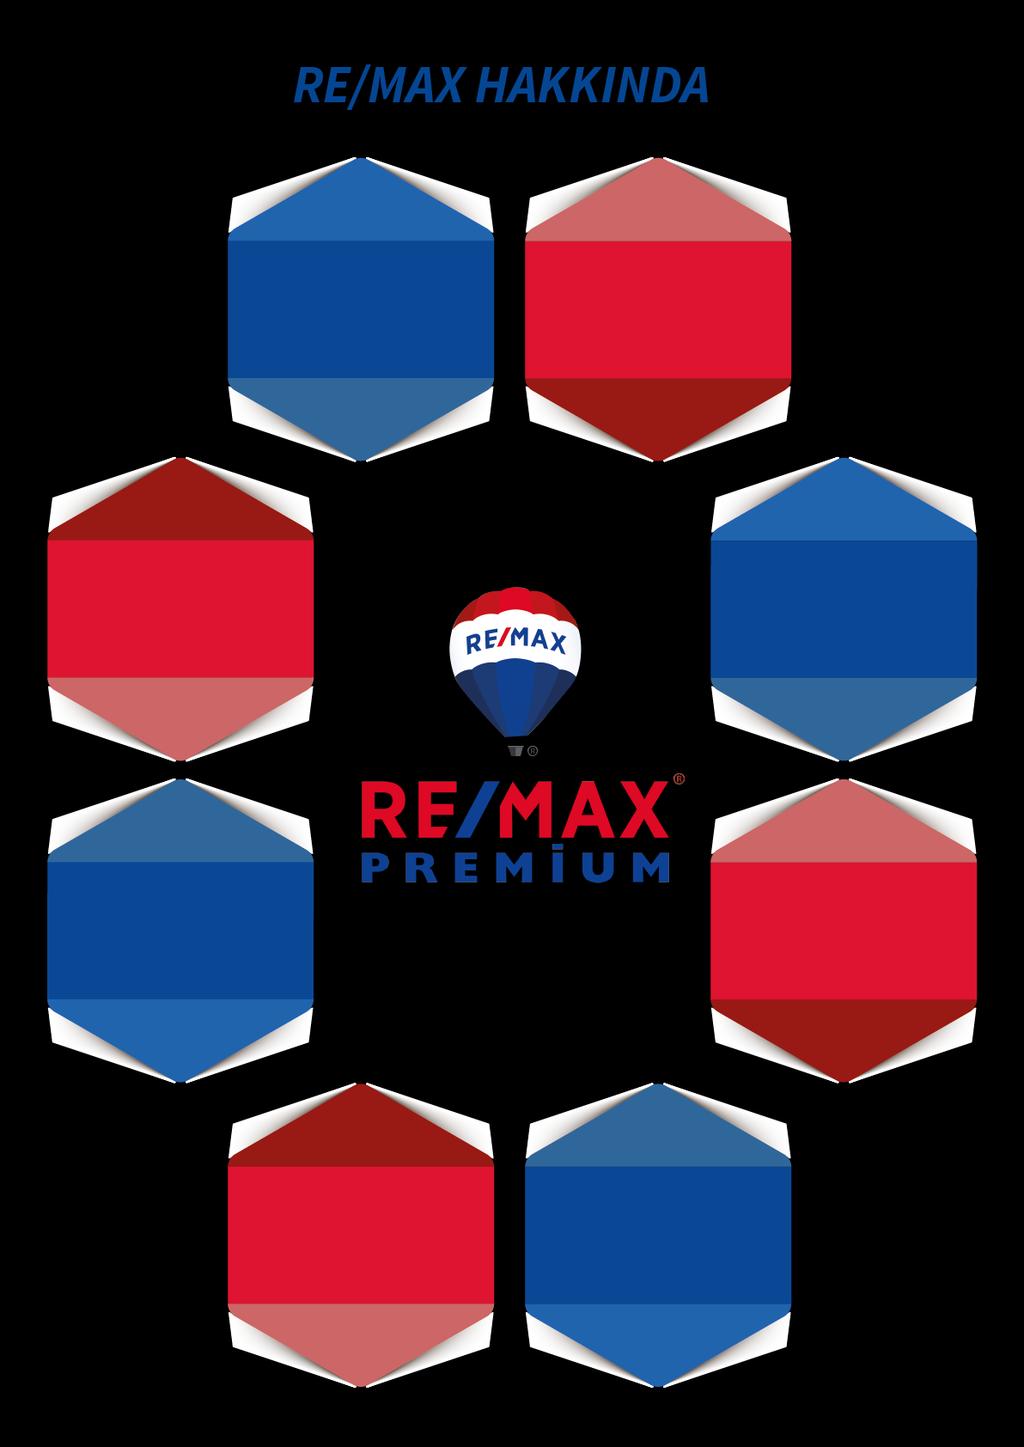 RE/MAX HAKKINDA RE/MAX HAKKINDA RE/MAX HAKKINDA 01 02 1973 yılında kurulan RE/MAX, bugün dünyada en çok gayrimenkul satışı gerçekleştiren kurumudur 97 Ülkede, yaklaşık 6500 Franchise 0fisi ve 100.